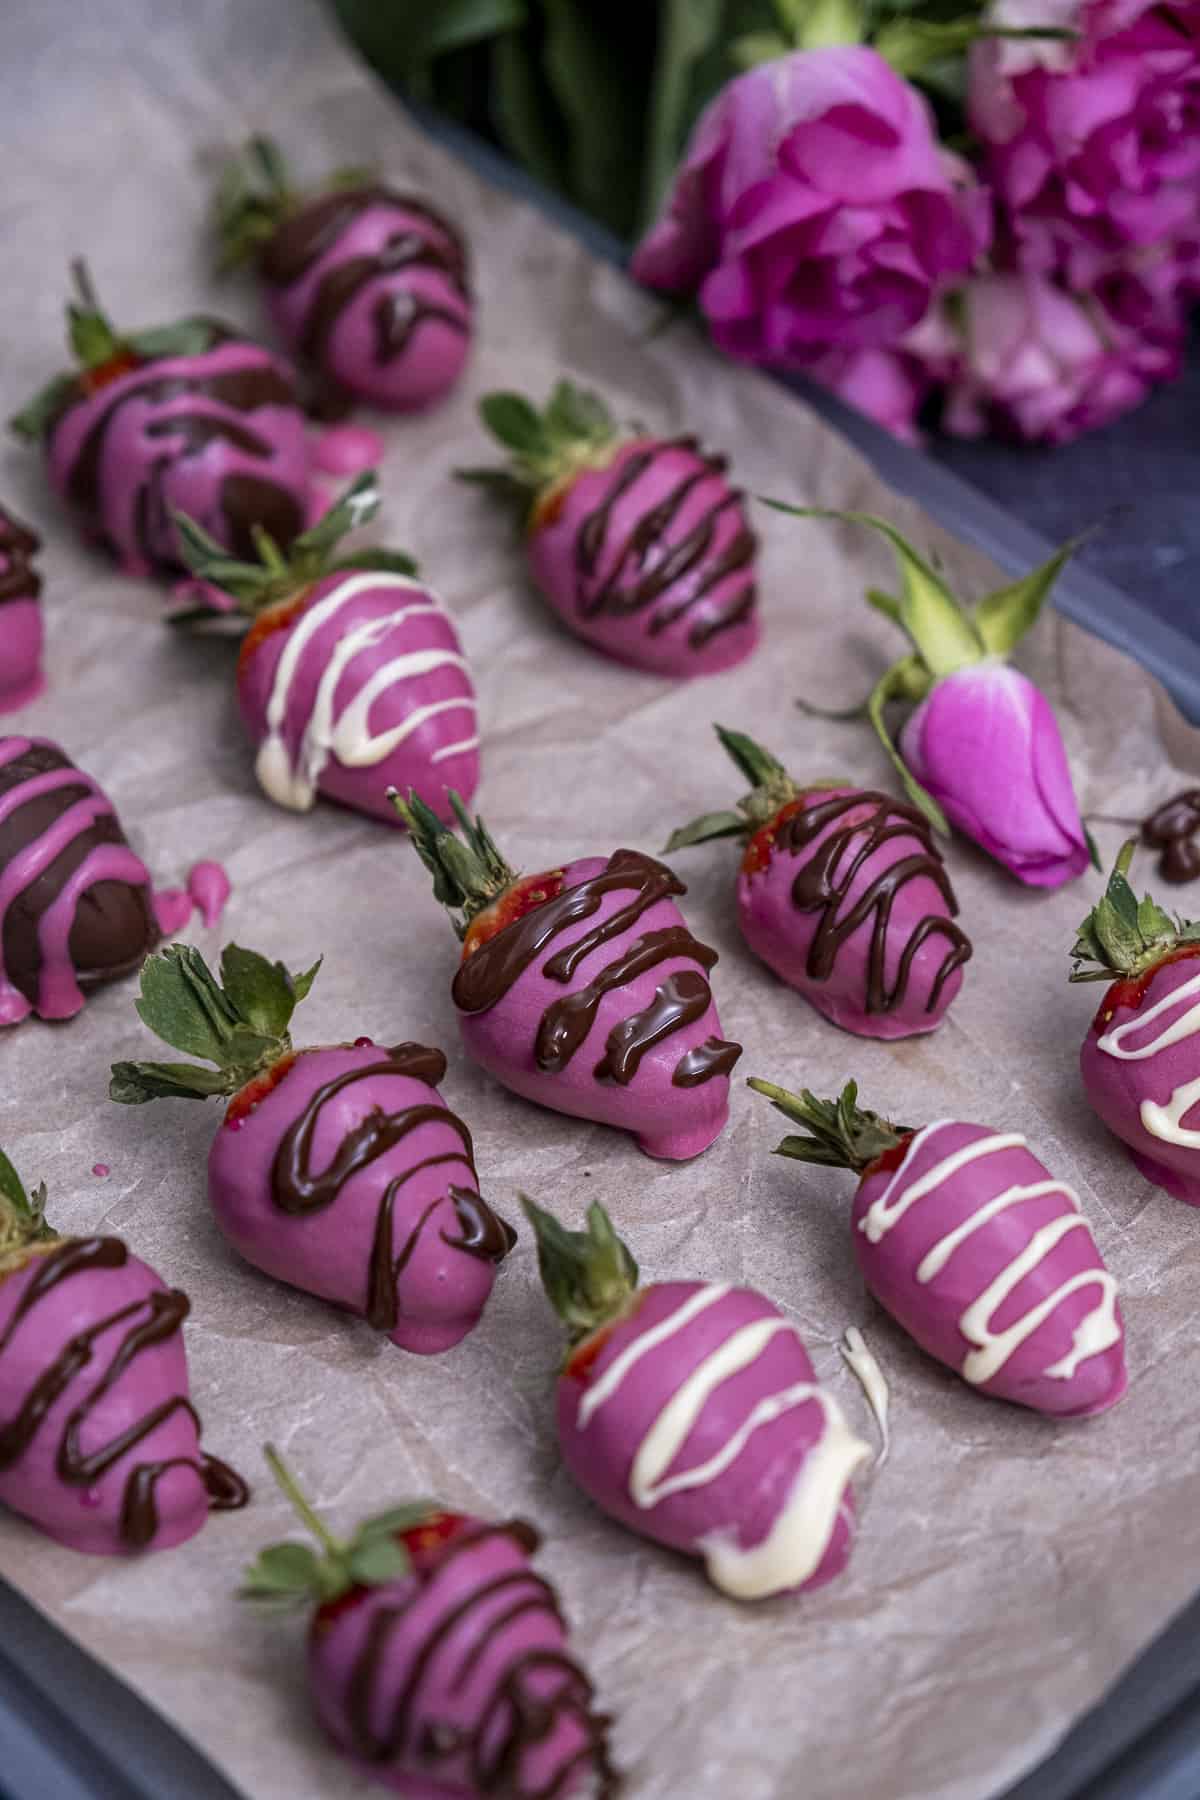 粉红色的草莓上点缀着白巧克力和黑巧克力，草莓后面是粉红色的玫瑰。